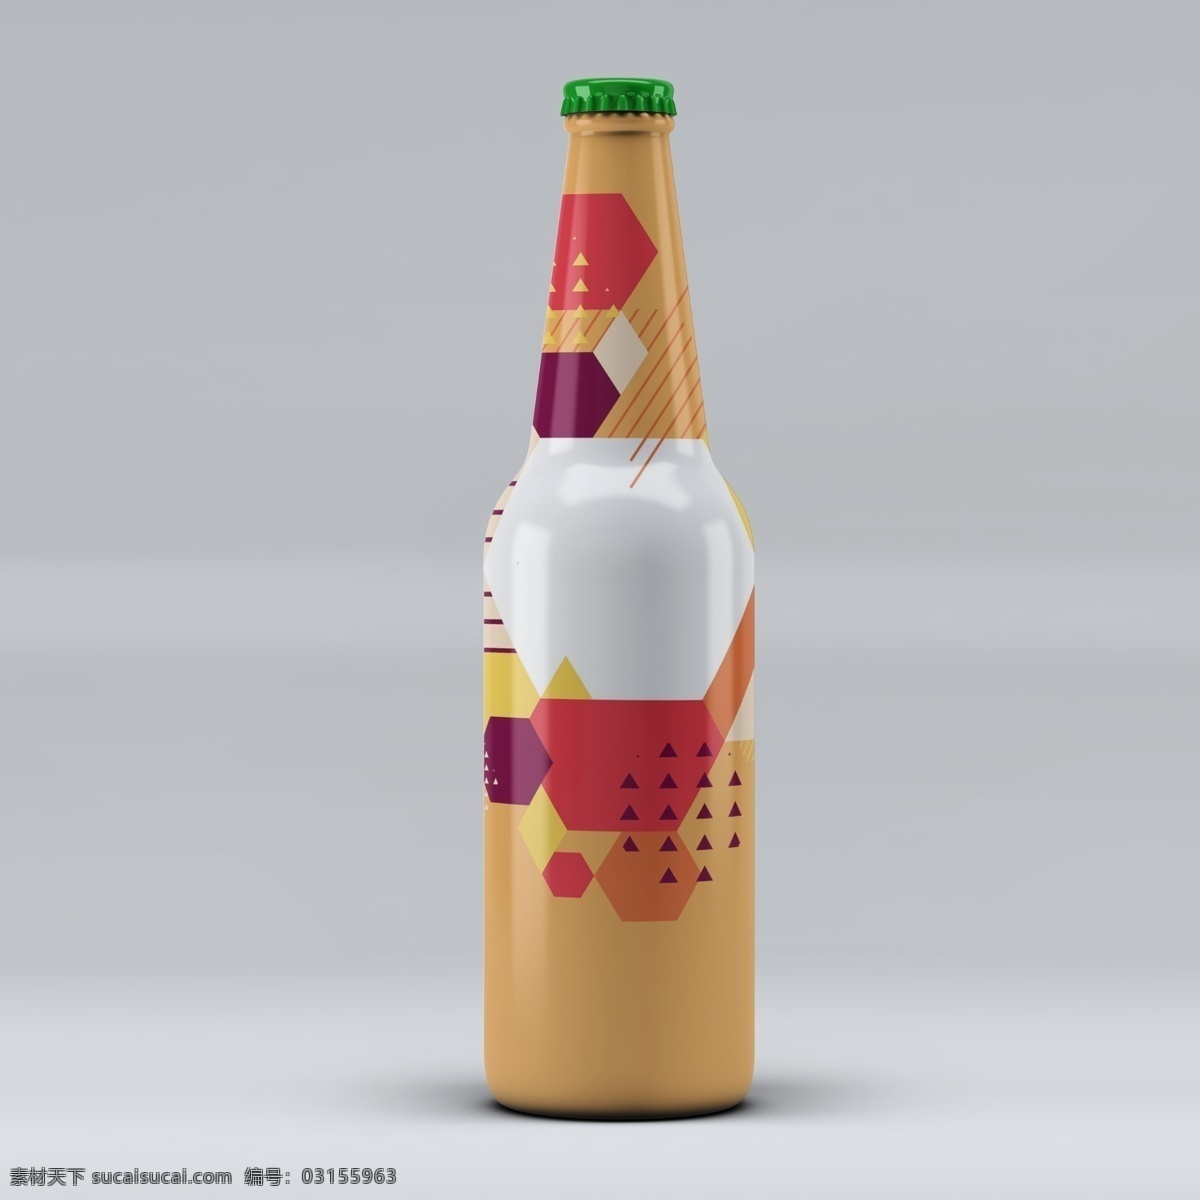 啤酒瓶样机 啤酒 饮料 酒瓶包装 酒瓶标签 瓶子标签 玻璃瓶标签 标签 酒瓶 样机 产品效果图 vi设计